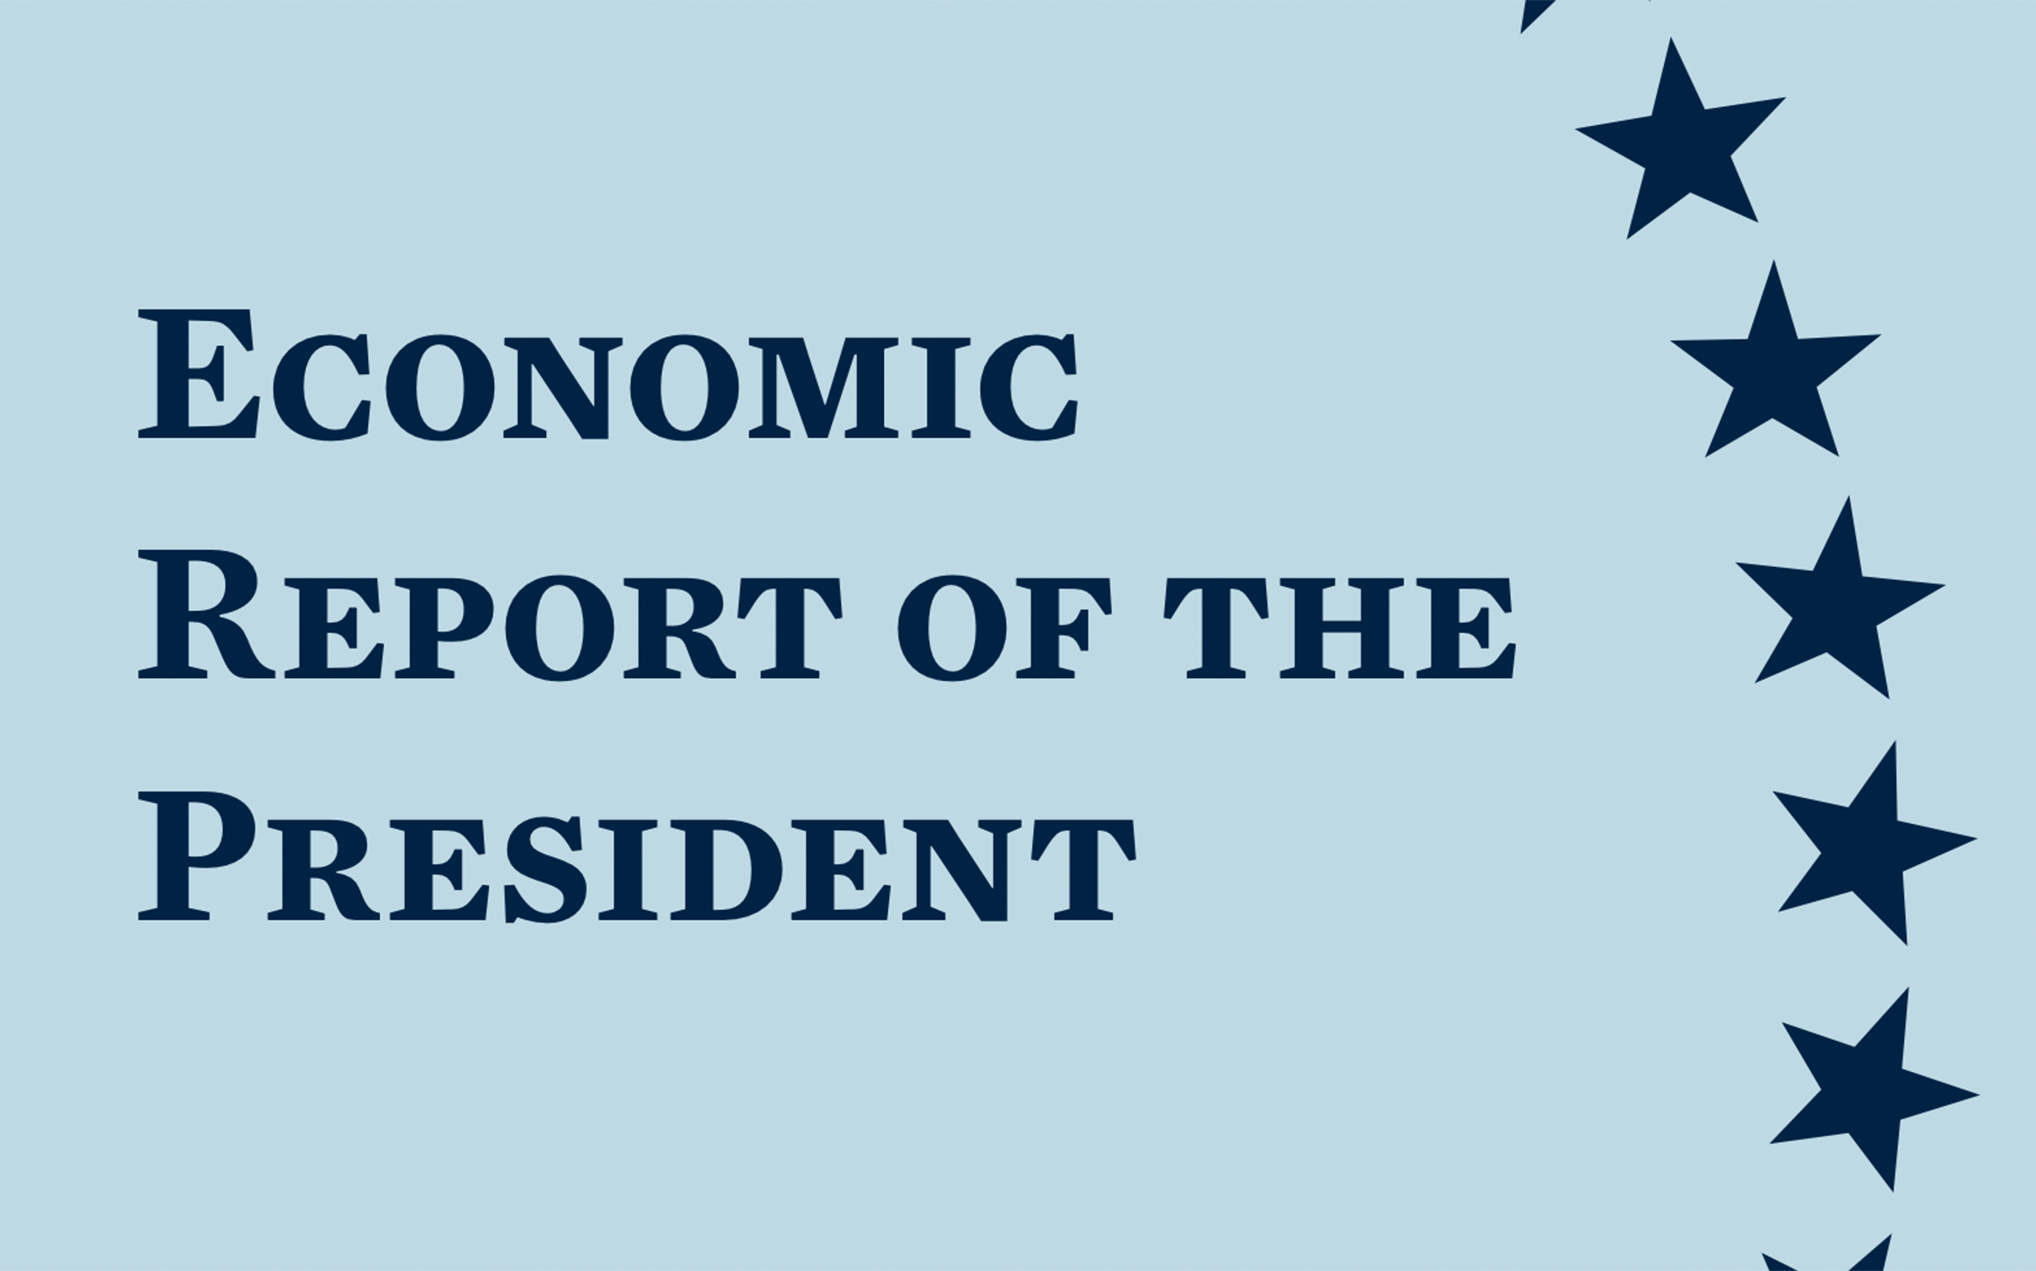 Economic report of the president